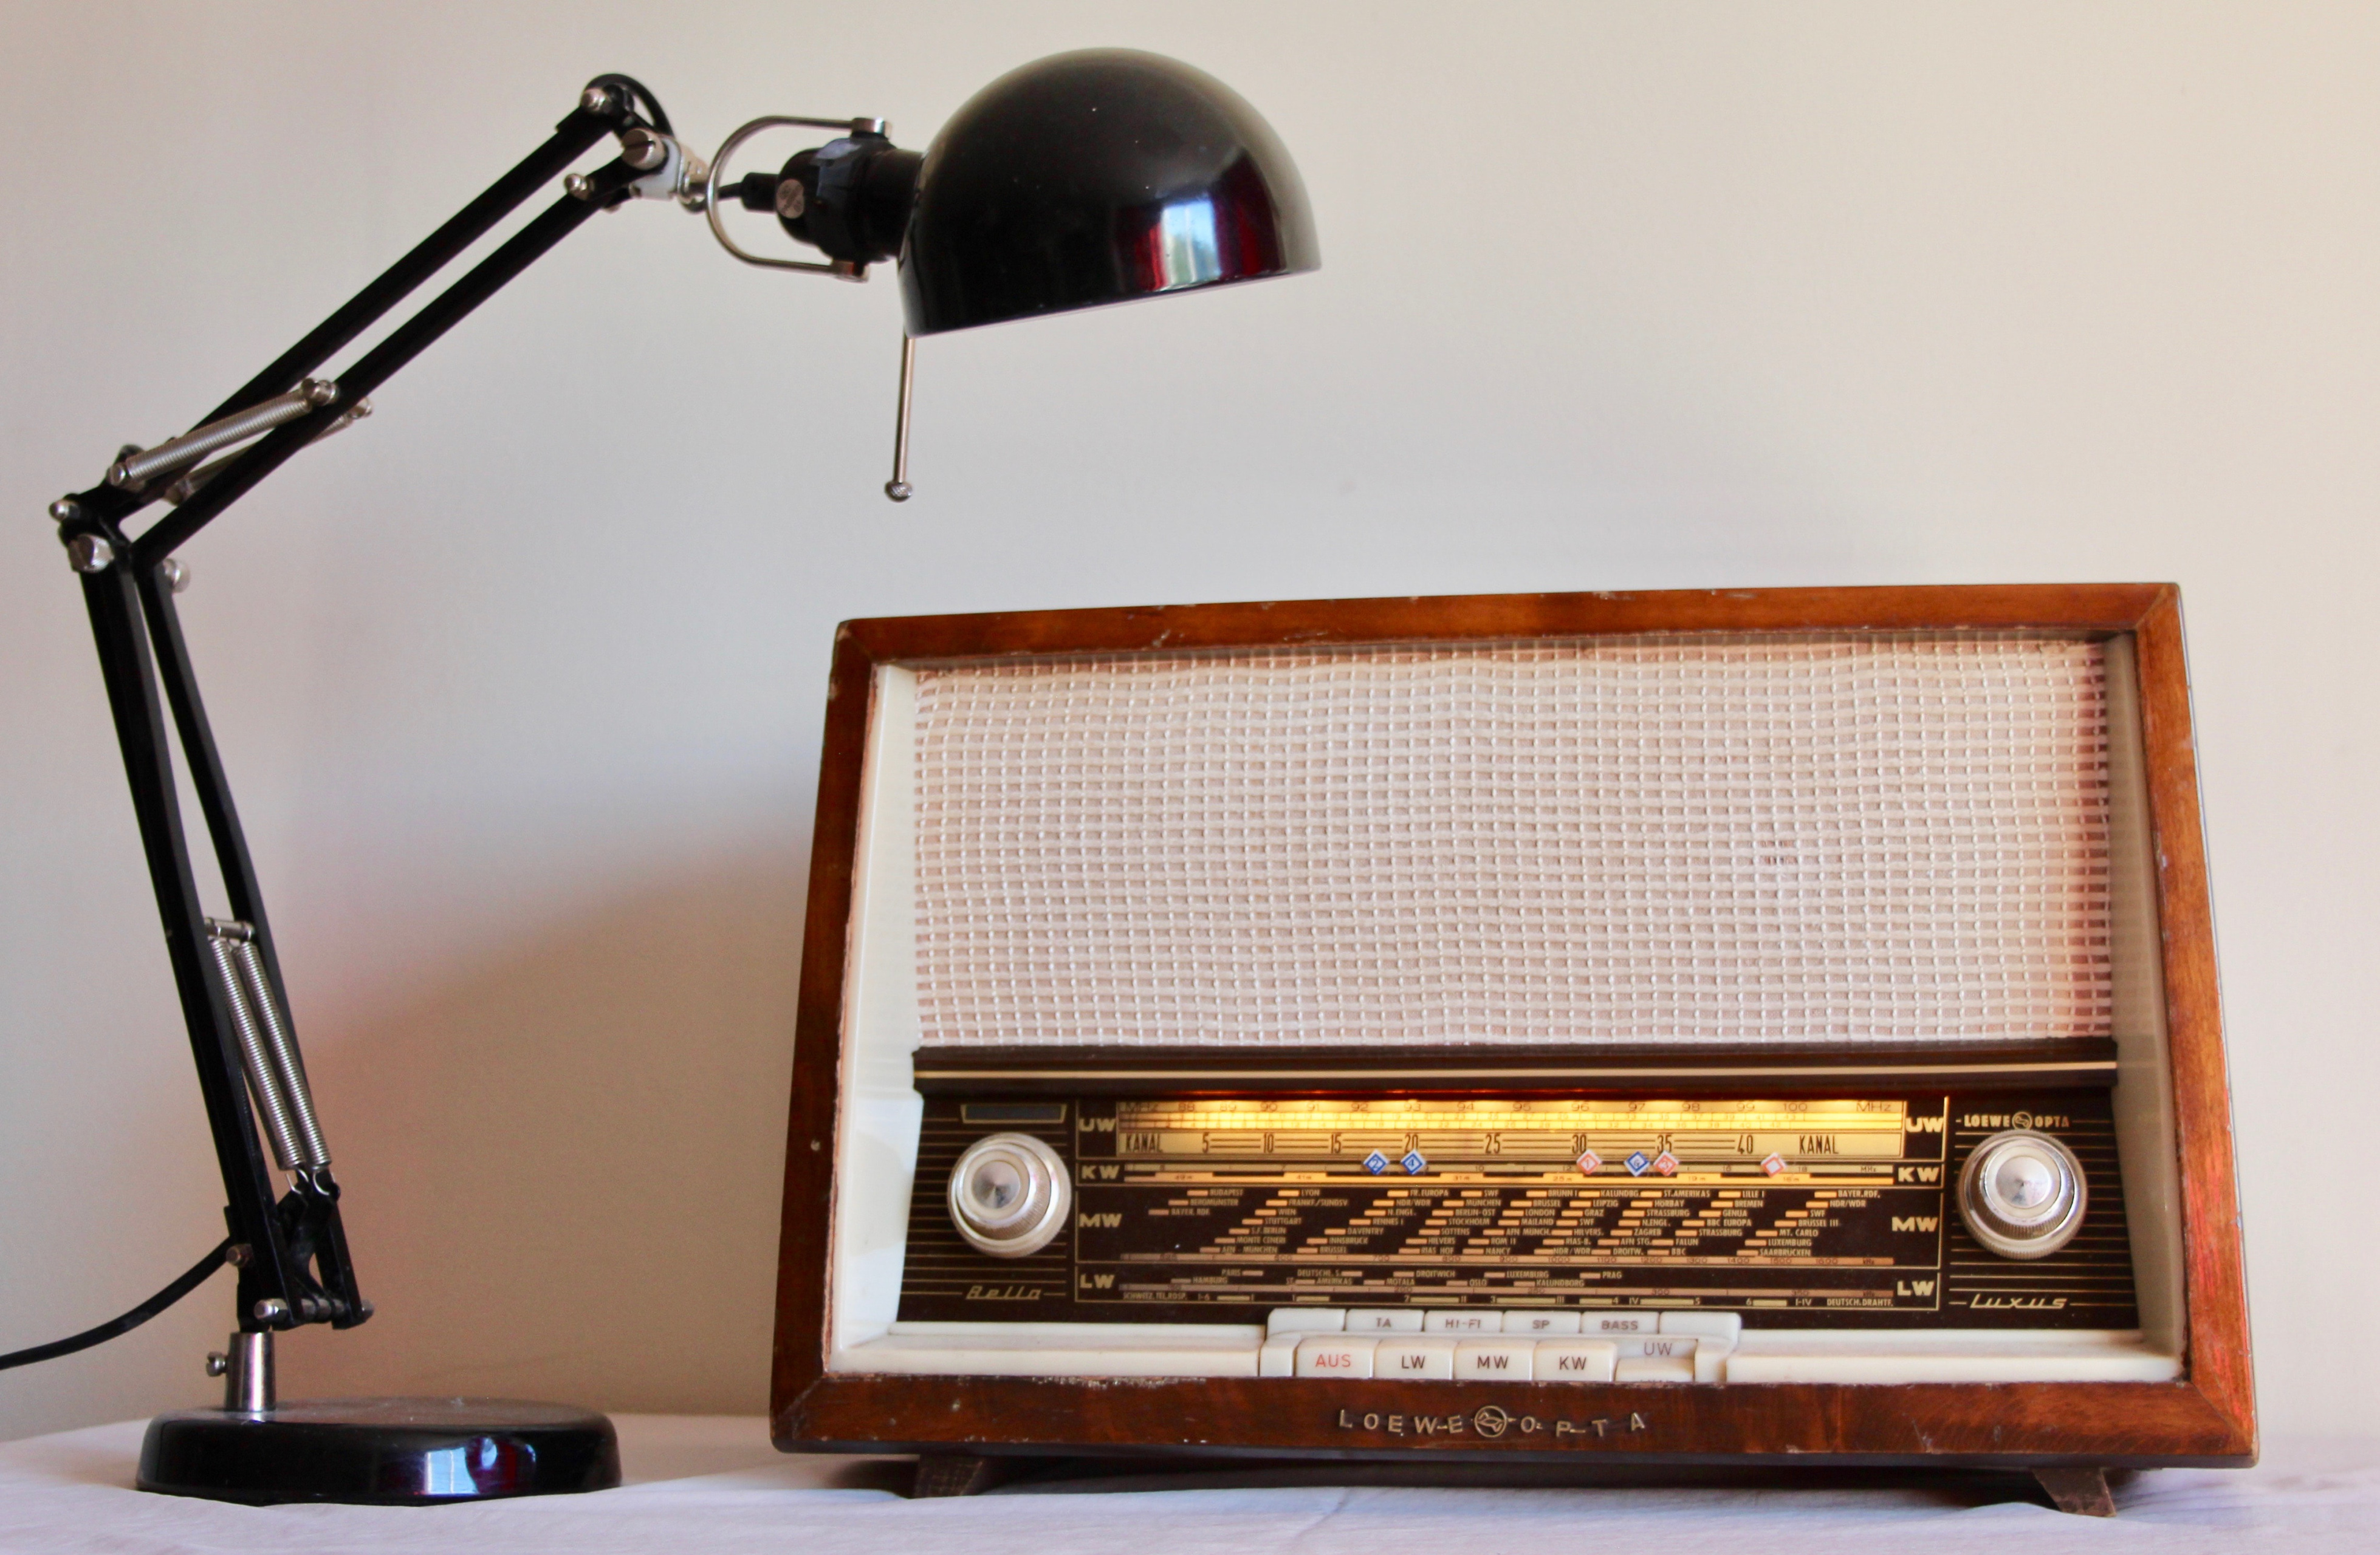 Vintage 1950s Loewe Opta radio 